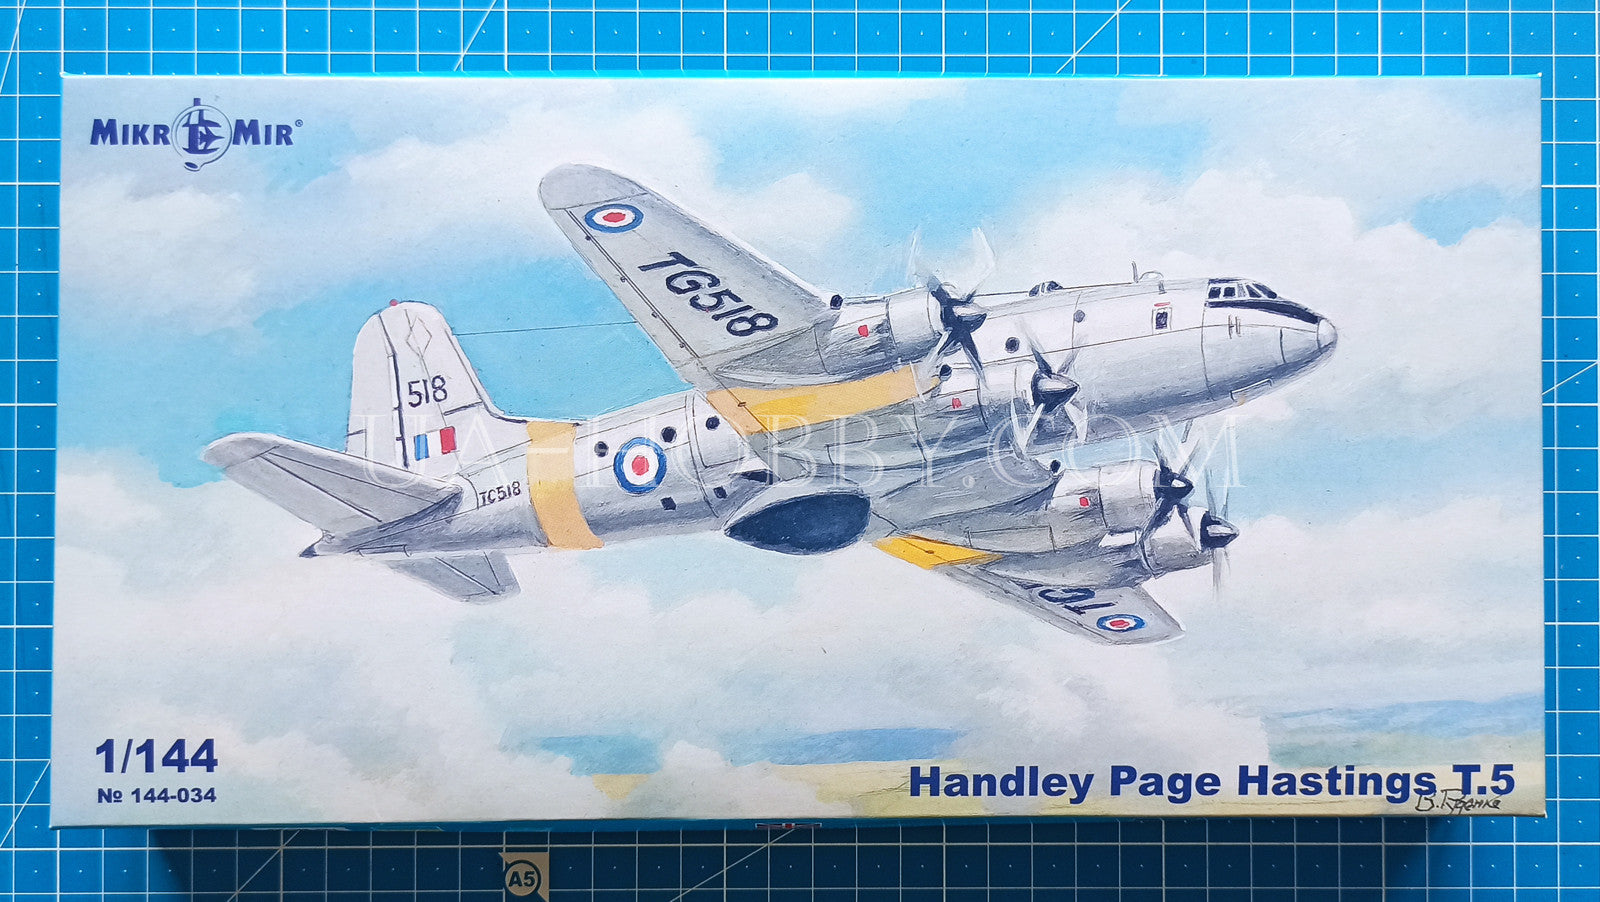 1/144 Handley Page Hastings T.5. MikroMir 144-034